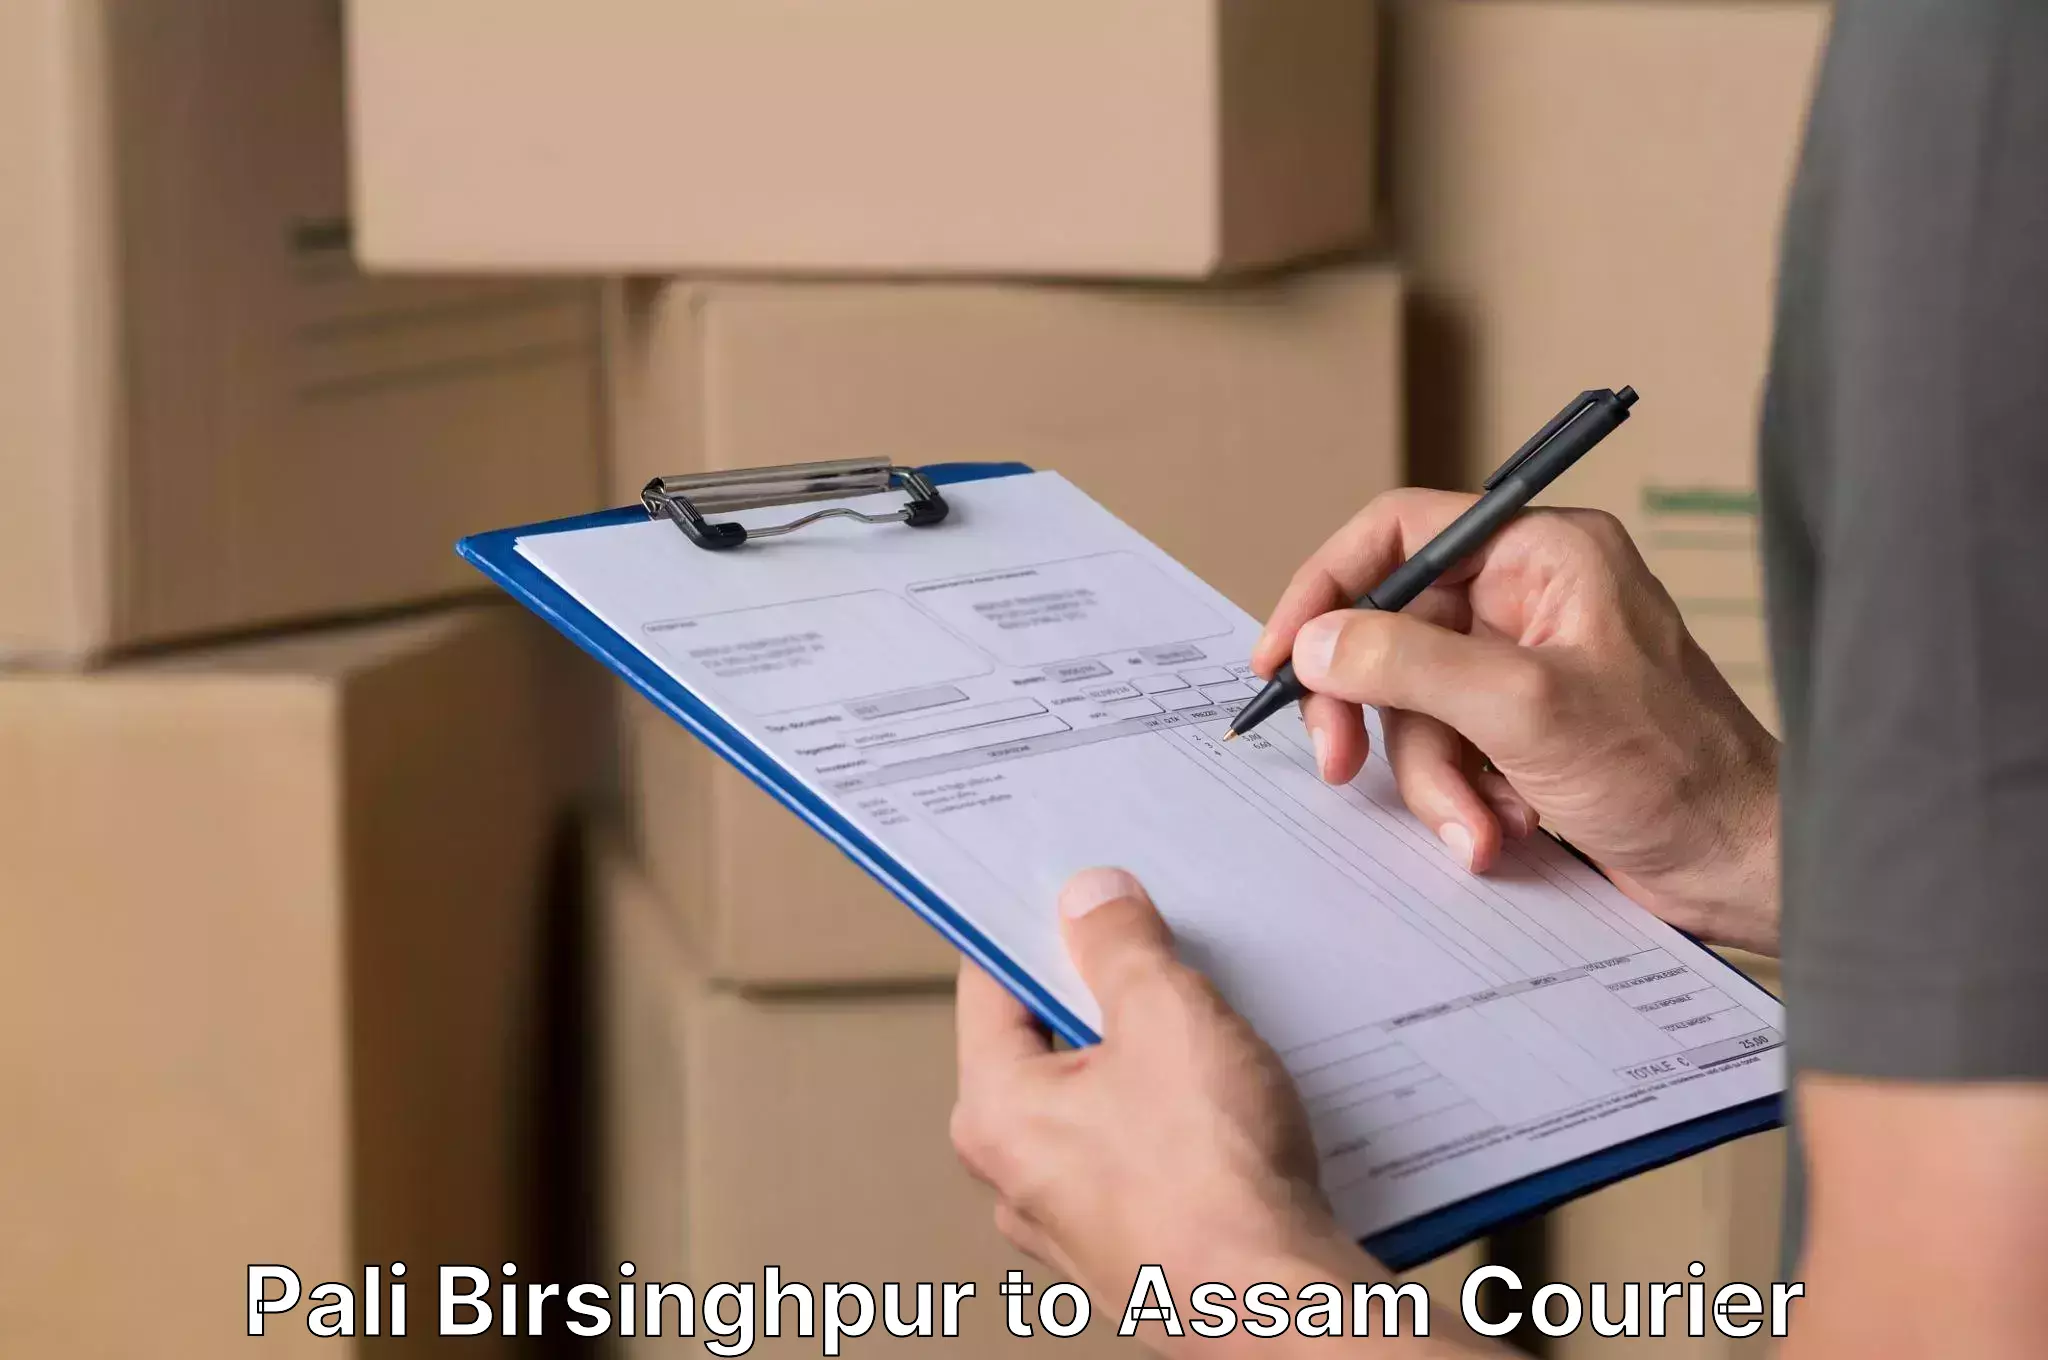 Efficient relocation services Pali Birsinghpur to Assam